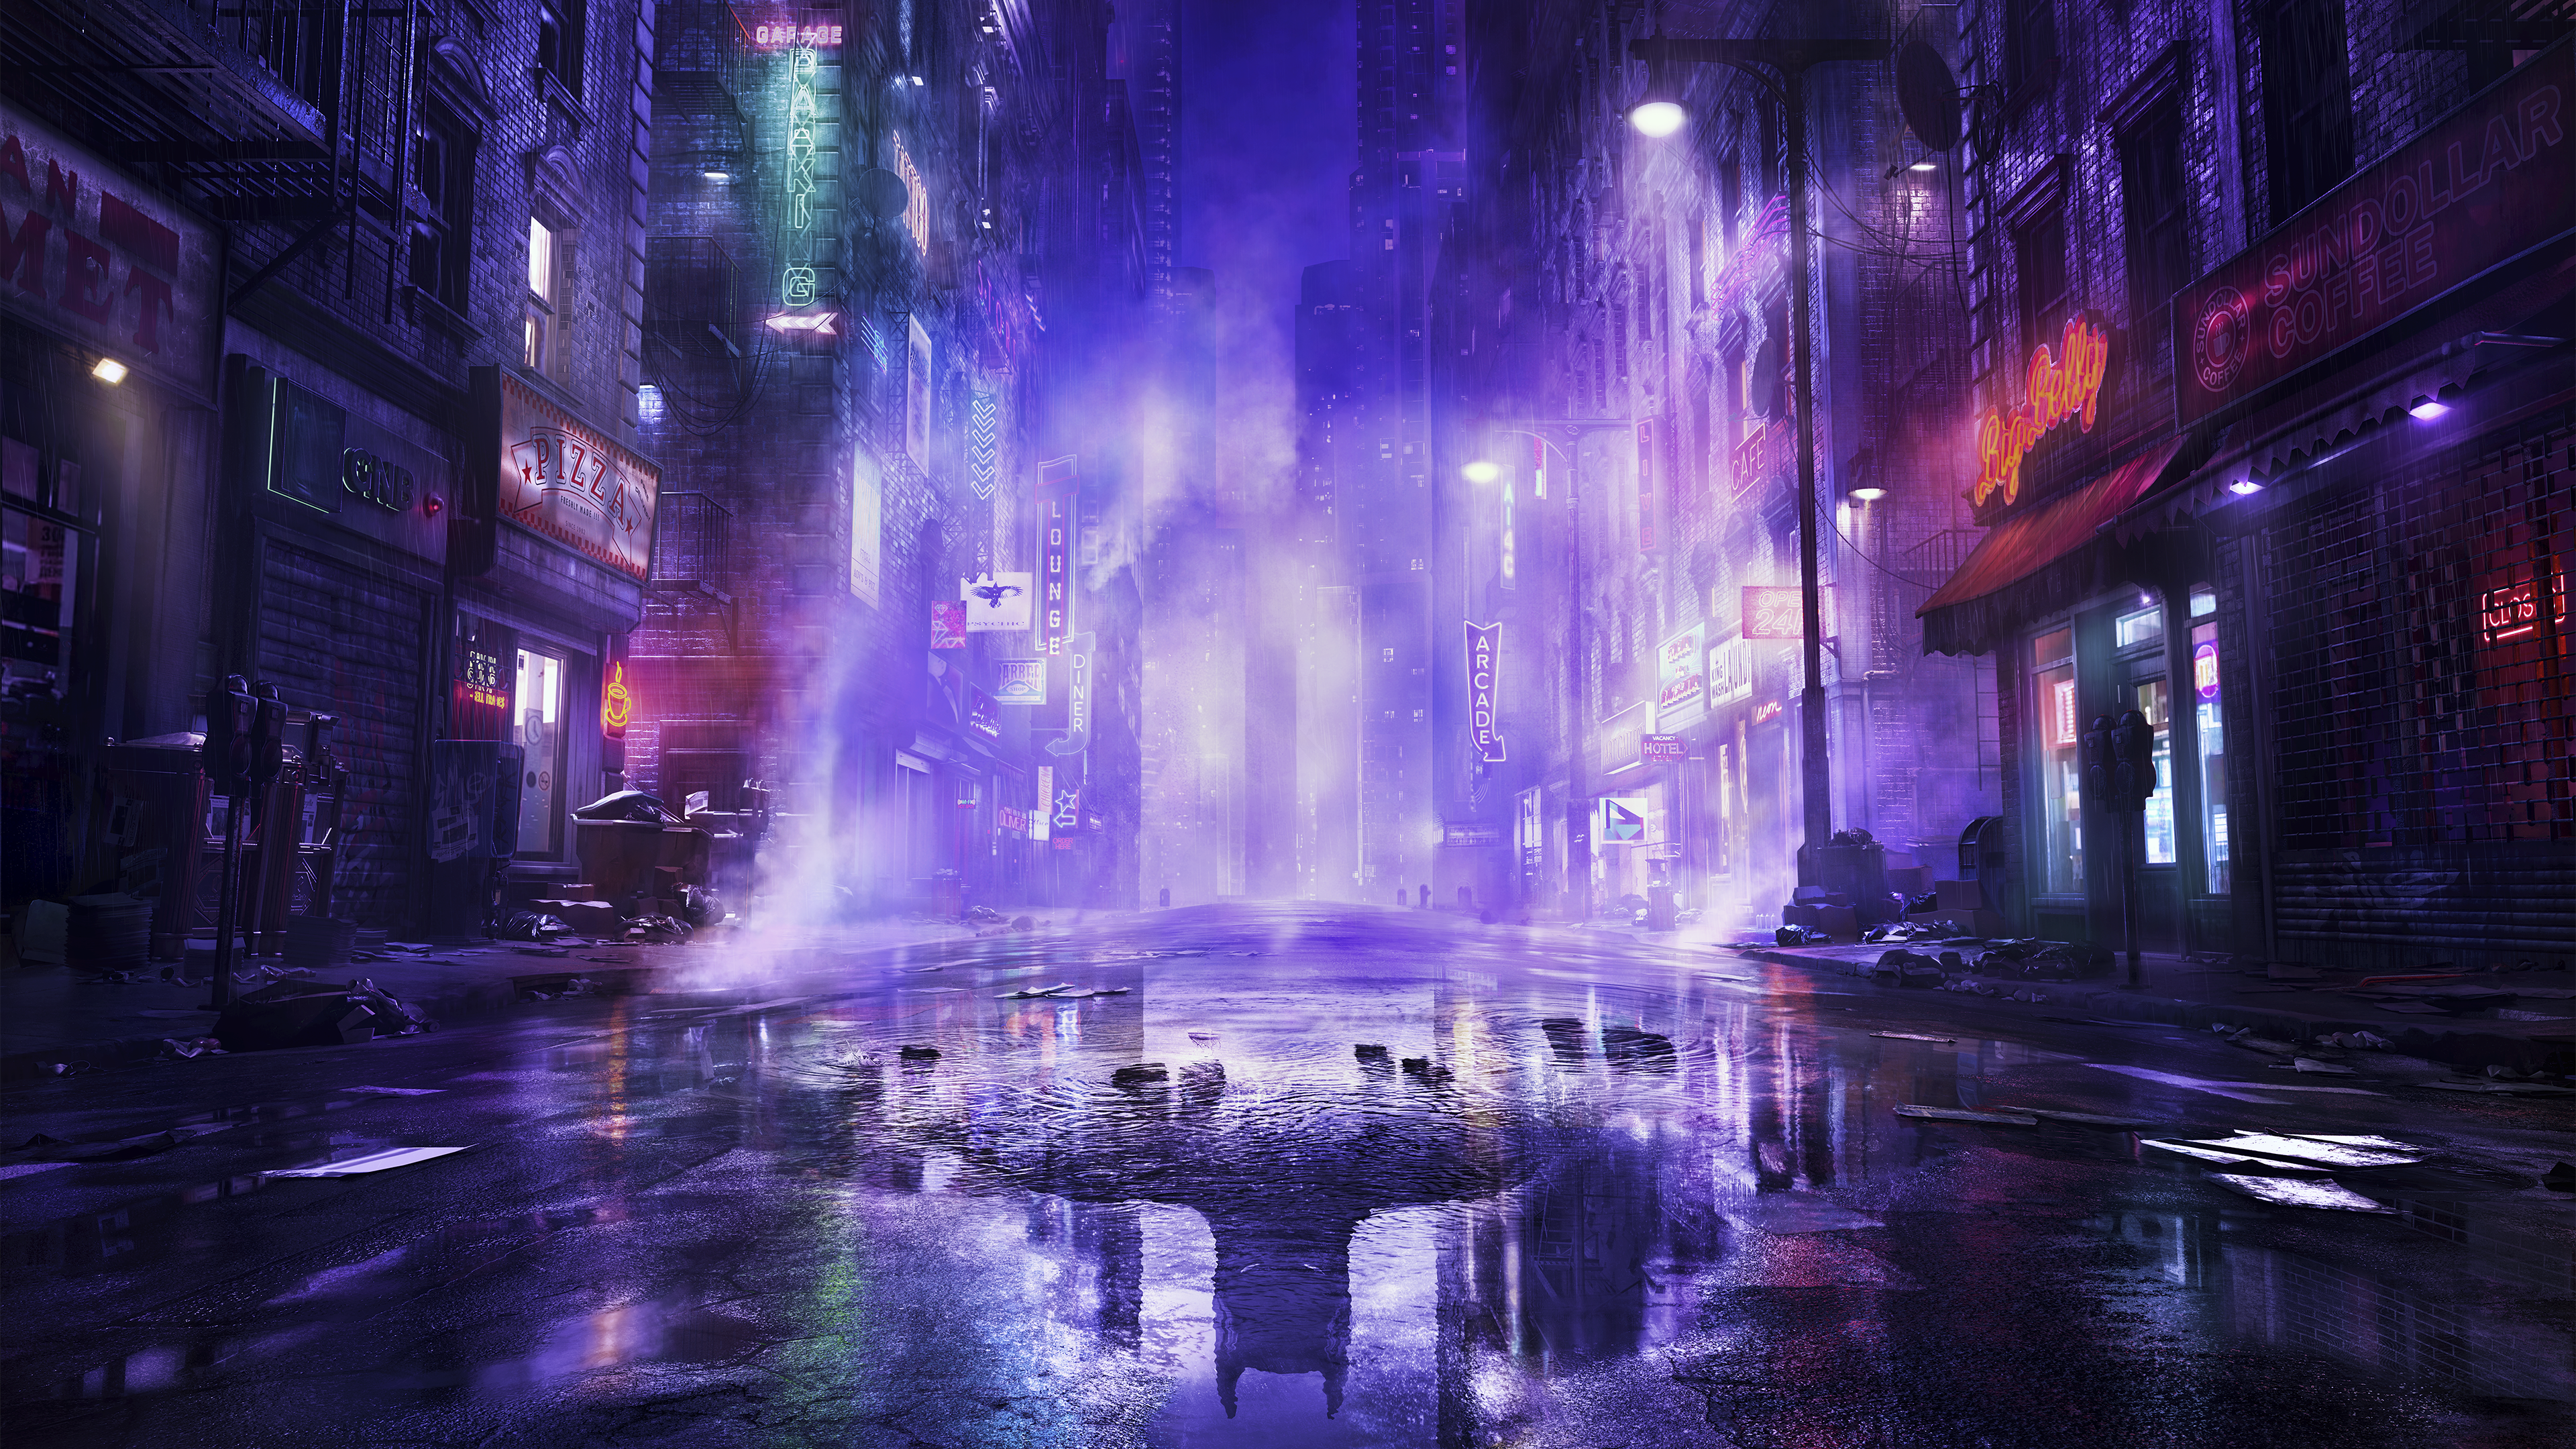 Bakgrundsbild från Gotham Knights föreställande Gotham med neonskyltar som reflekteras i vattenpölar